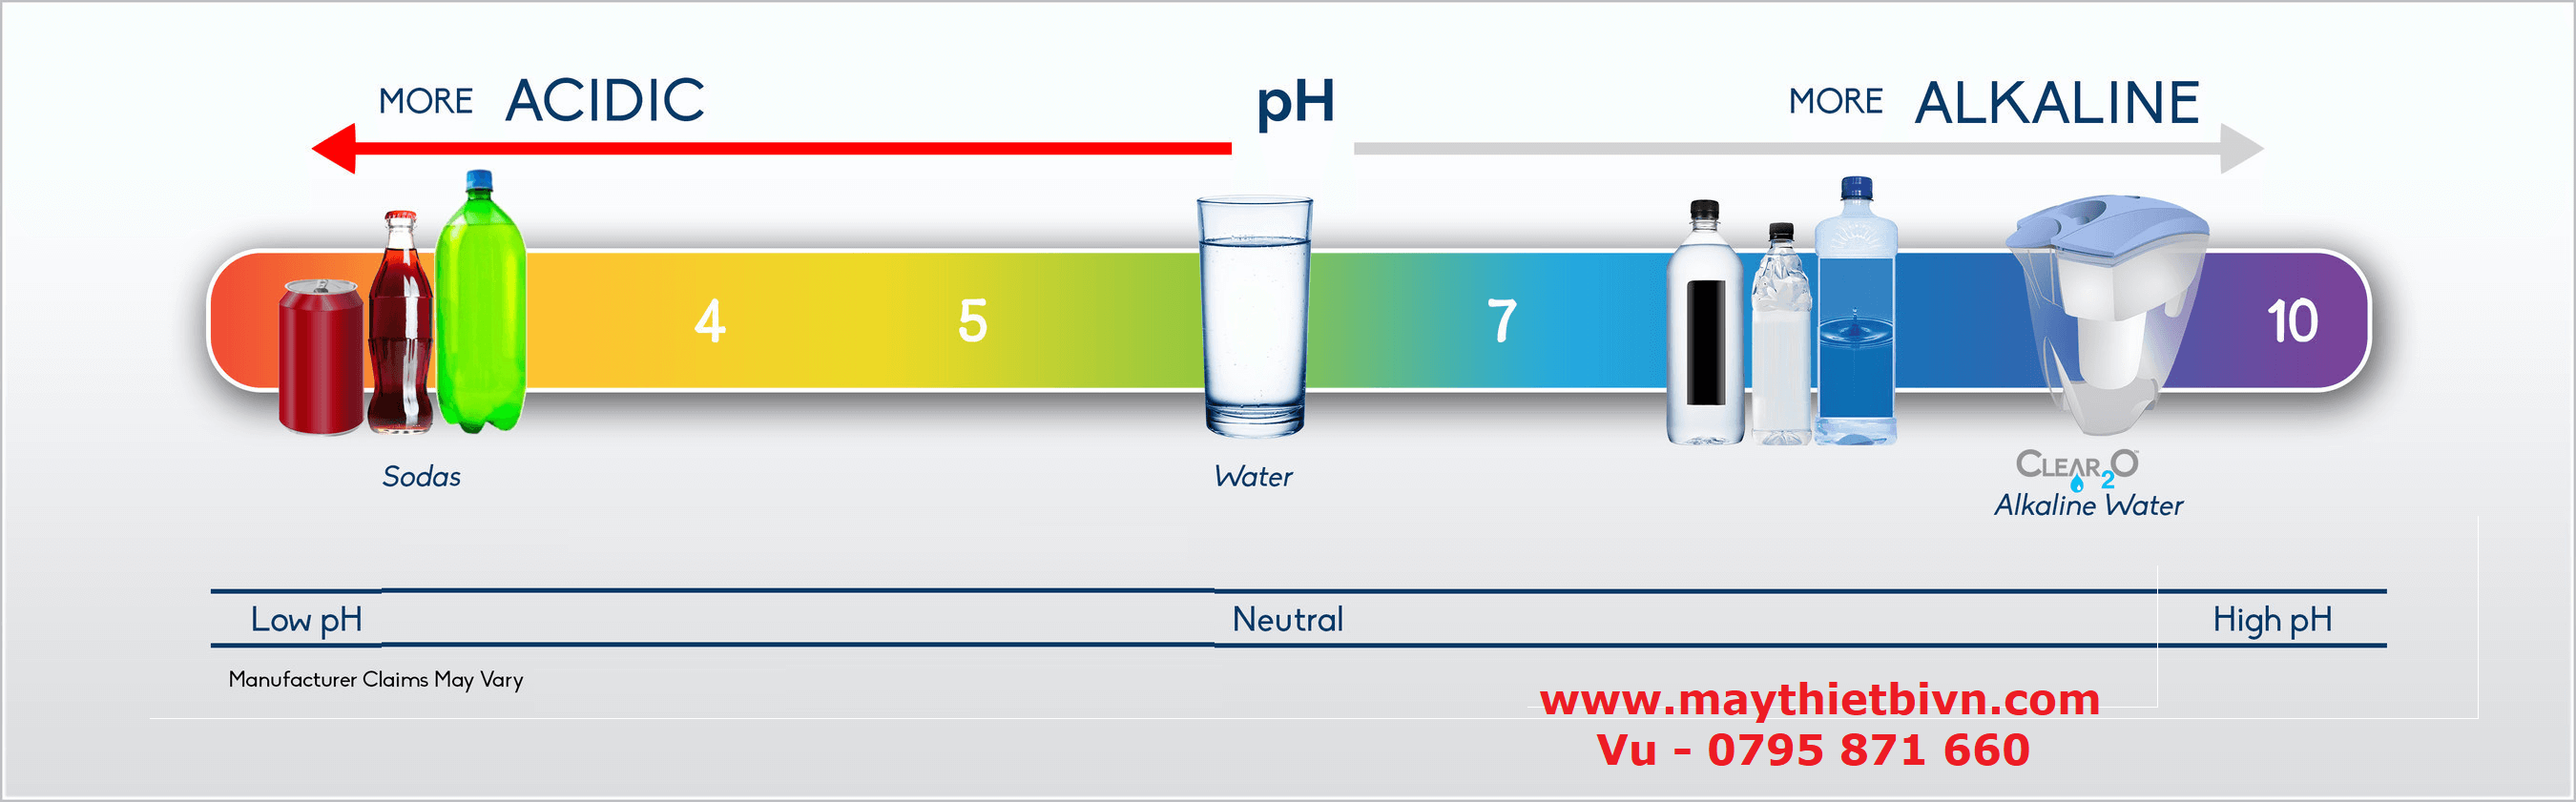 pH là gì